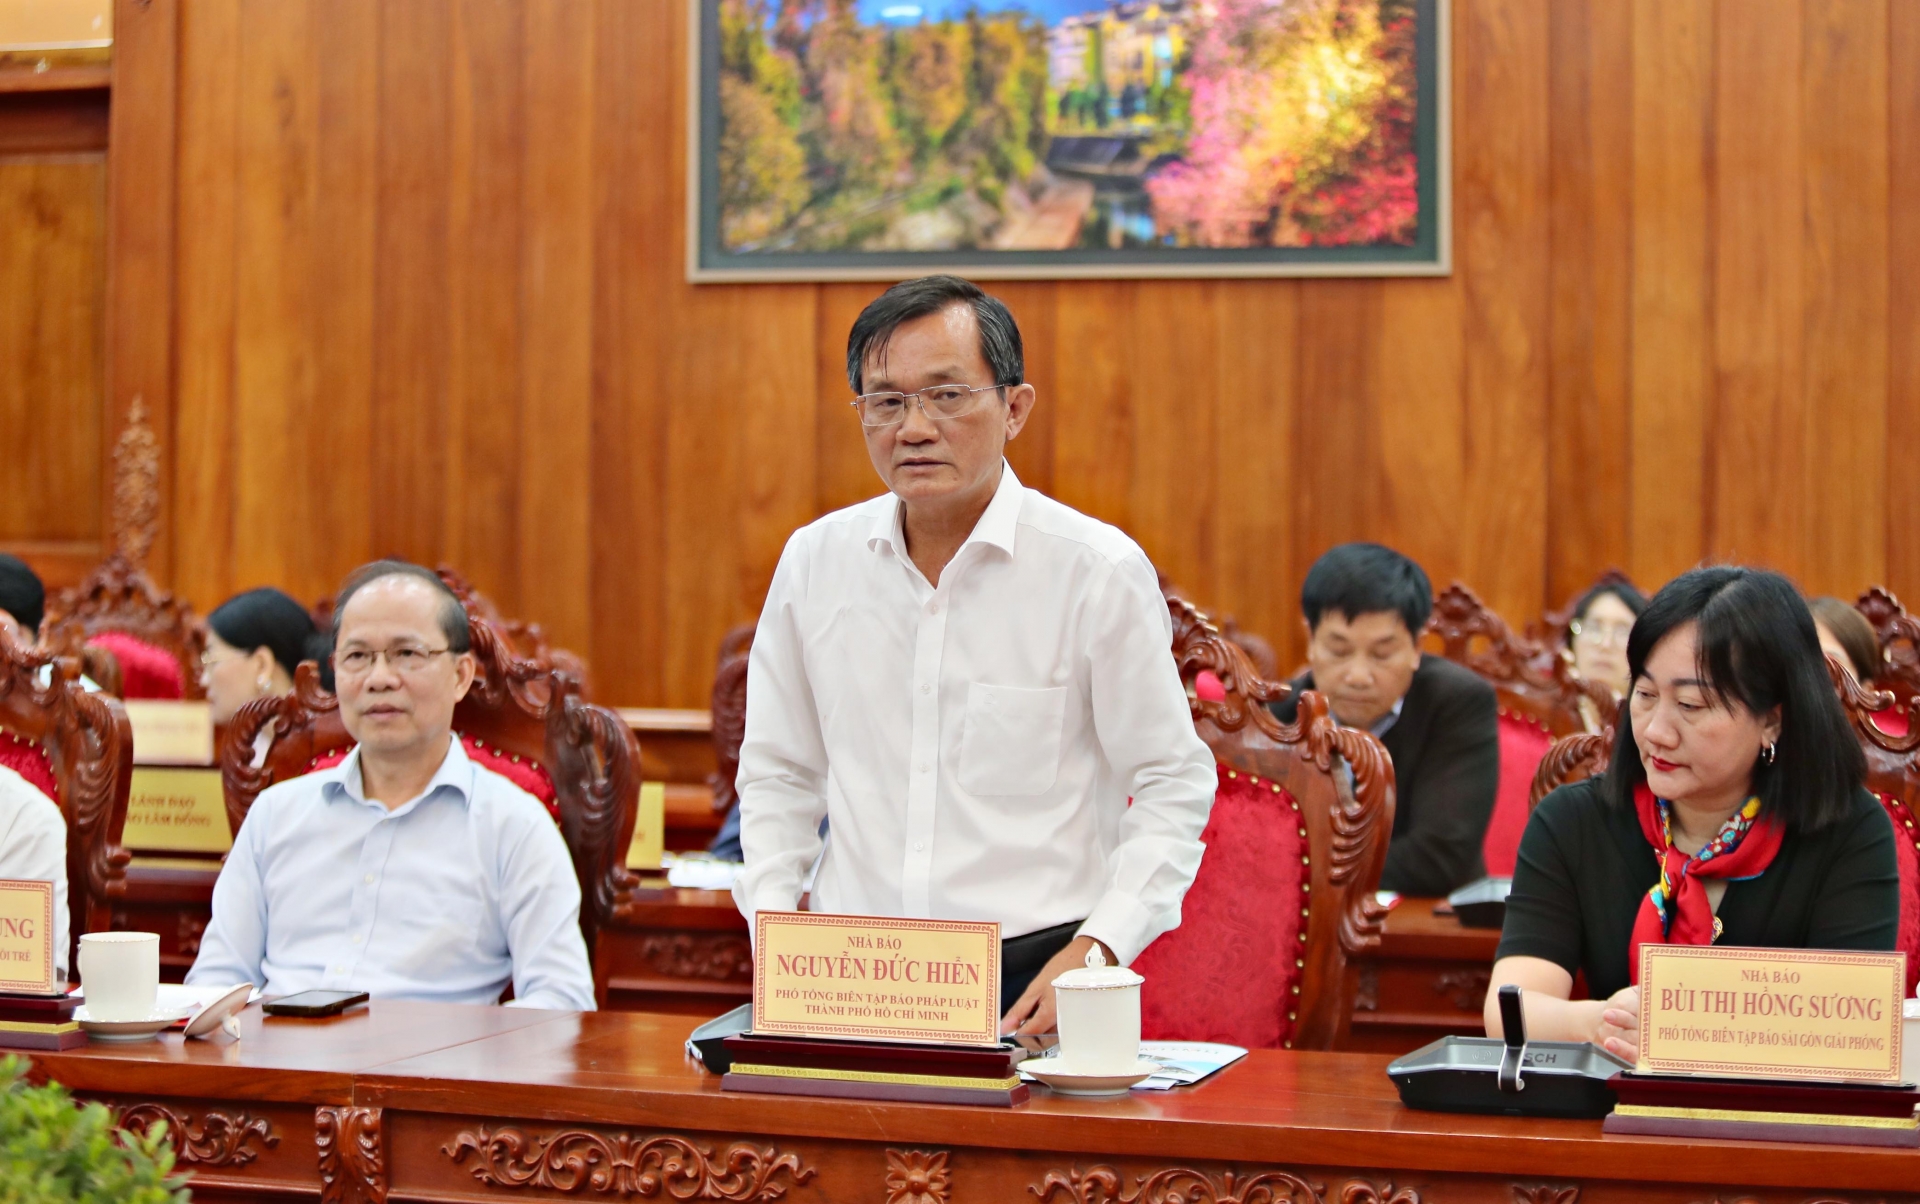 Nhà Báo Nguyễn Đức Hiển, Phó Tổng biên tập Báo Pháp Luật TP Hồ Chí Minh phát biểu đóng góp ý kiến tại buổi làm việc